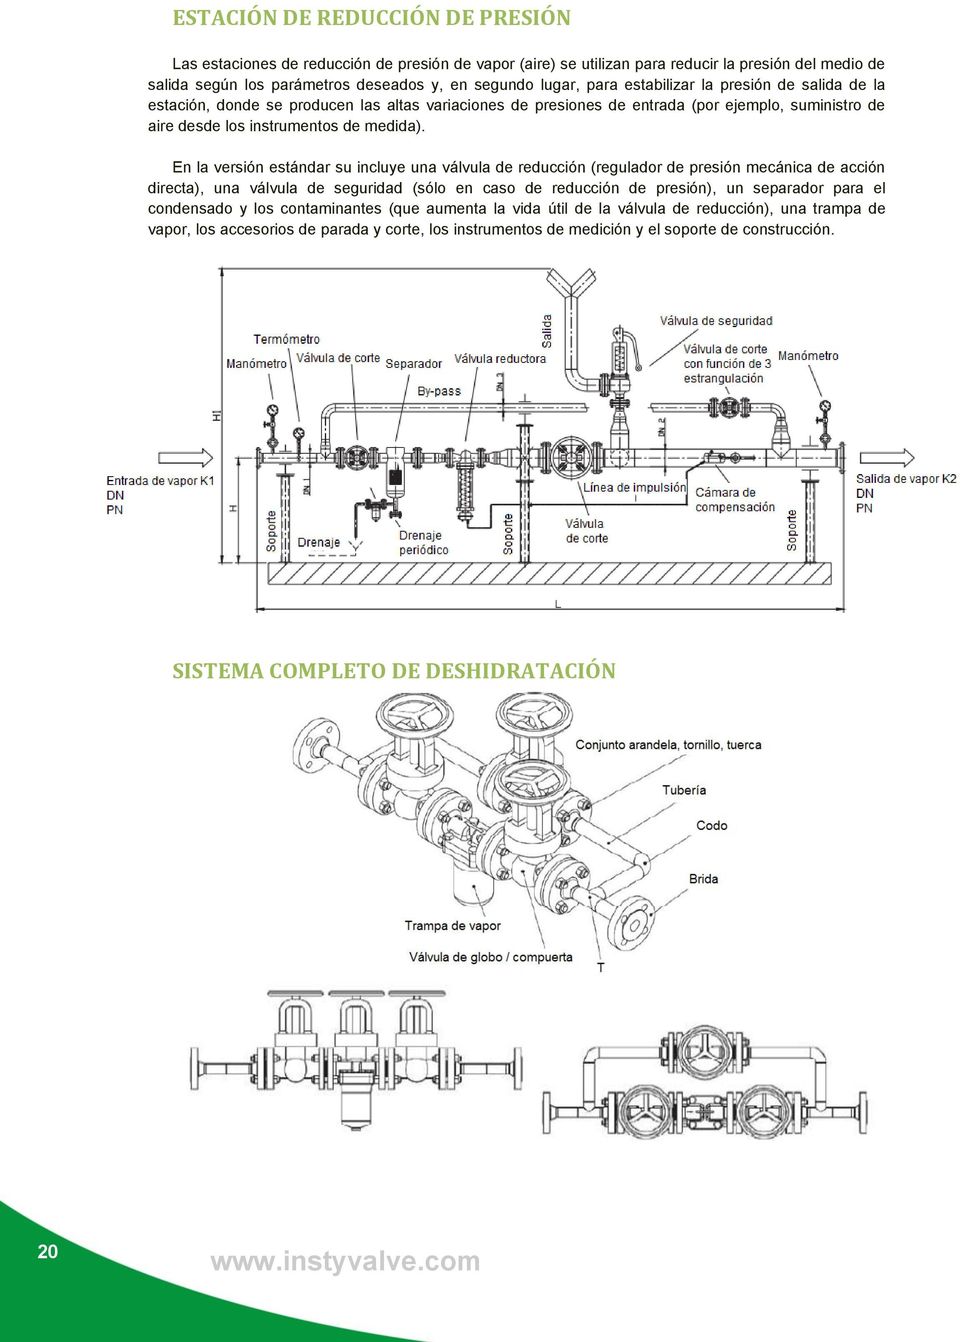 En la versión estándar su incluye una válvula de reducción (regulador de presión mecánica de acción directa), una válvula de seguridad (sólo en caso de reducción de presión), un separador para el